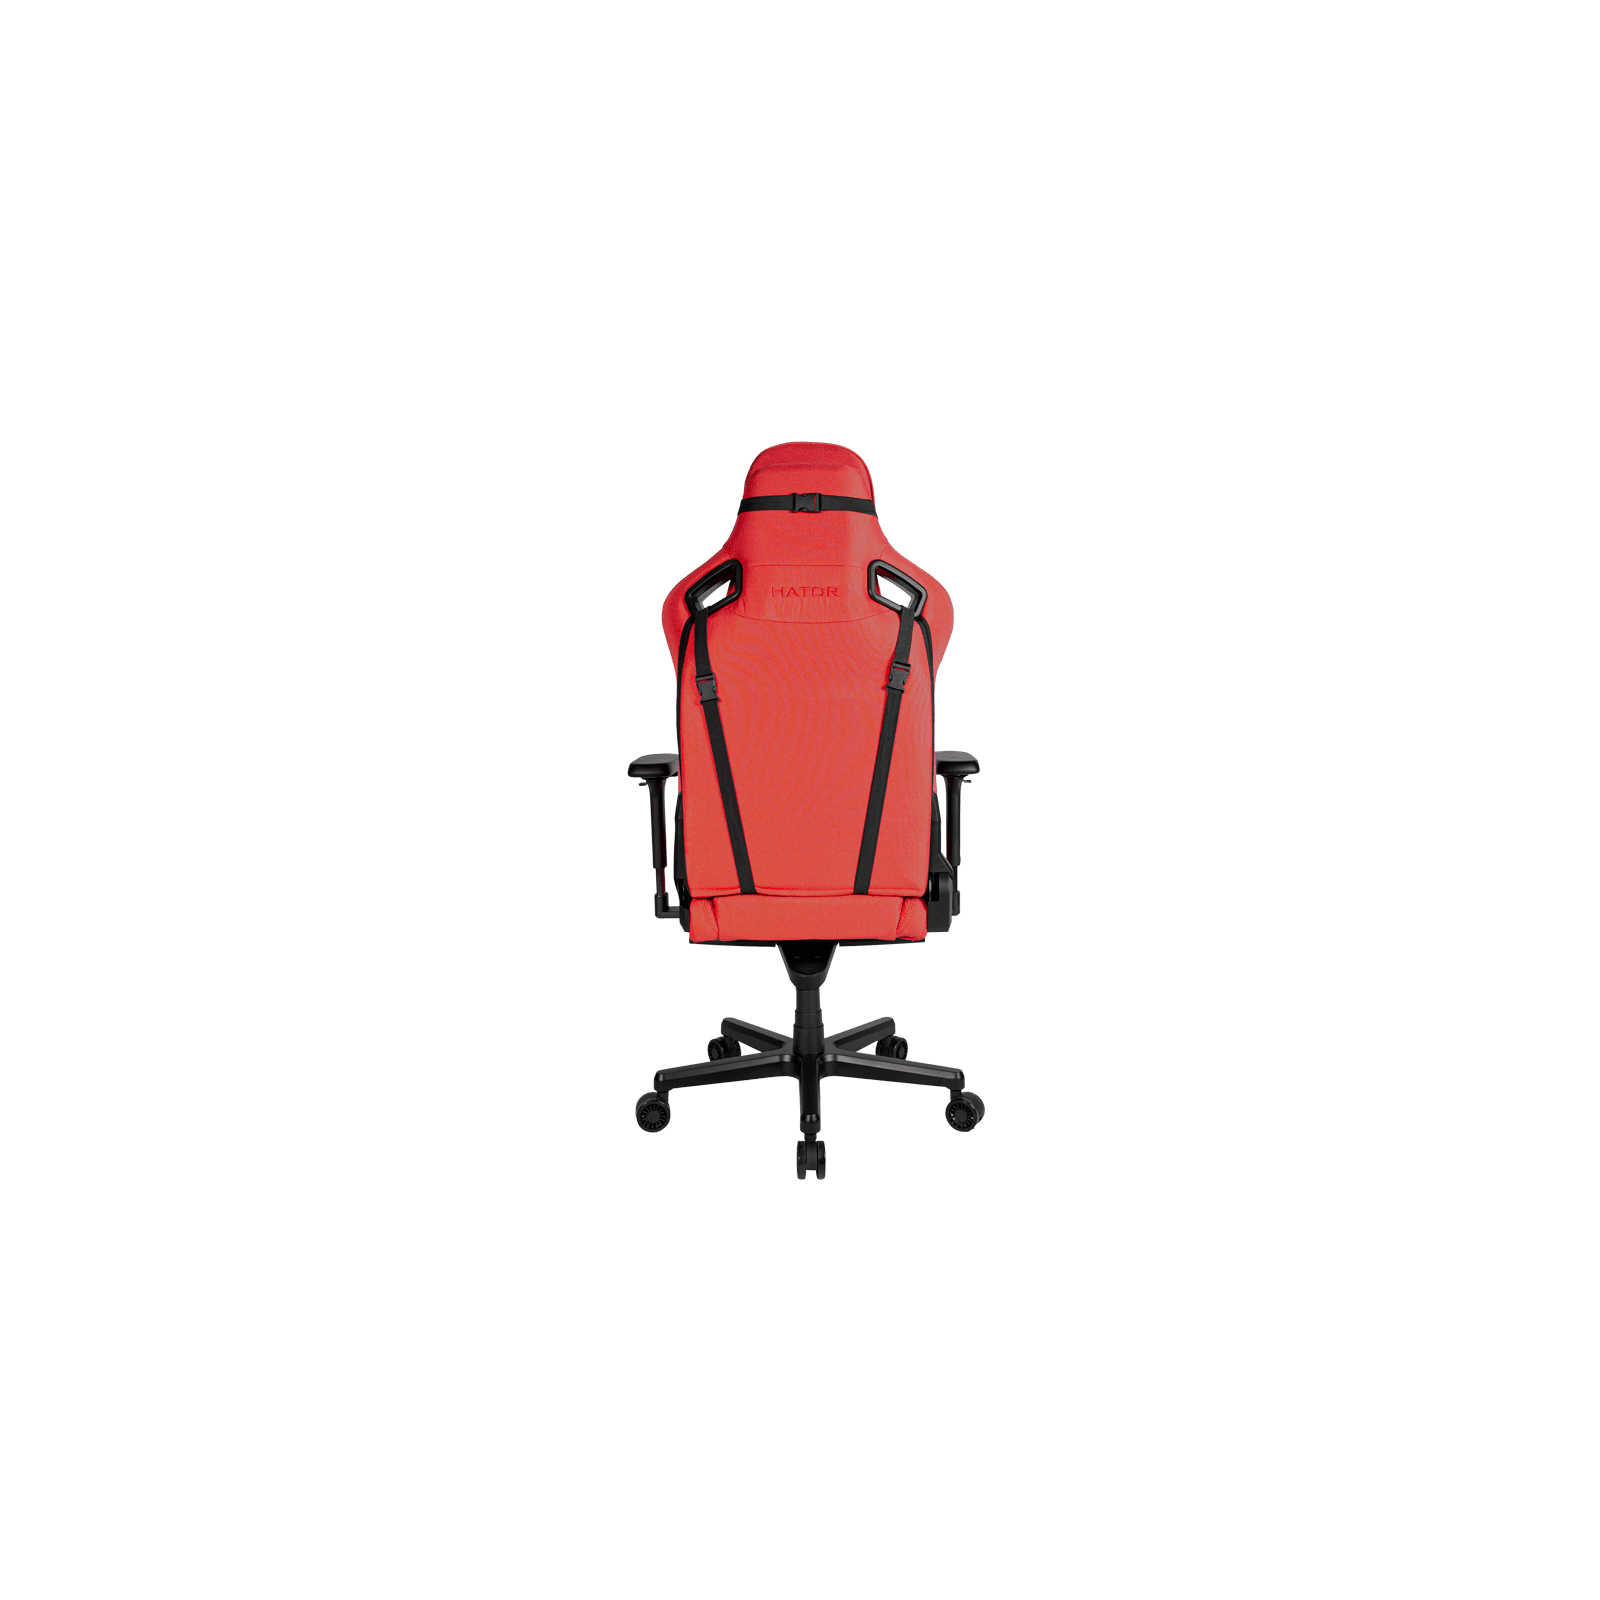 Кресло игровое Hator Arc Fabric Stelvio Red (HTC-994) изображение 3